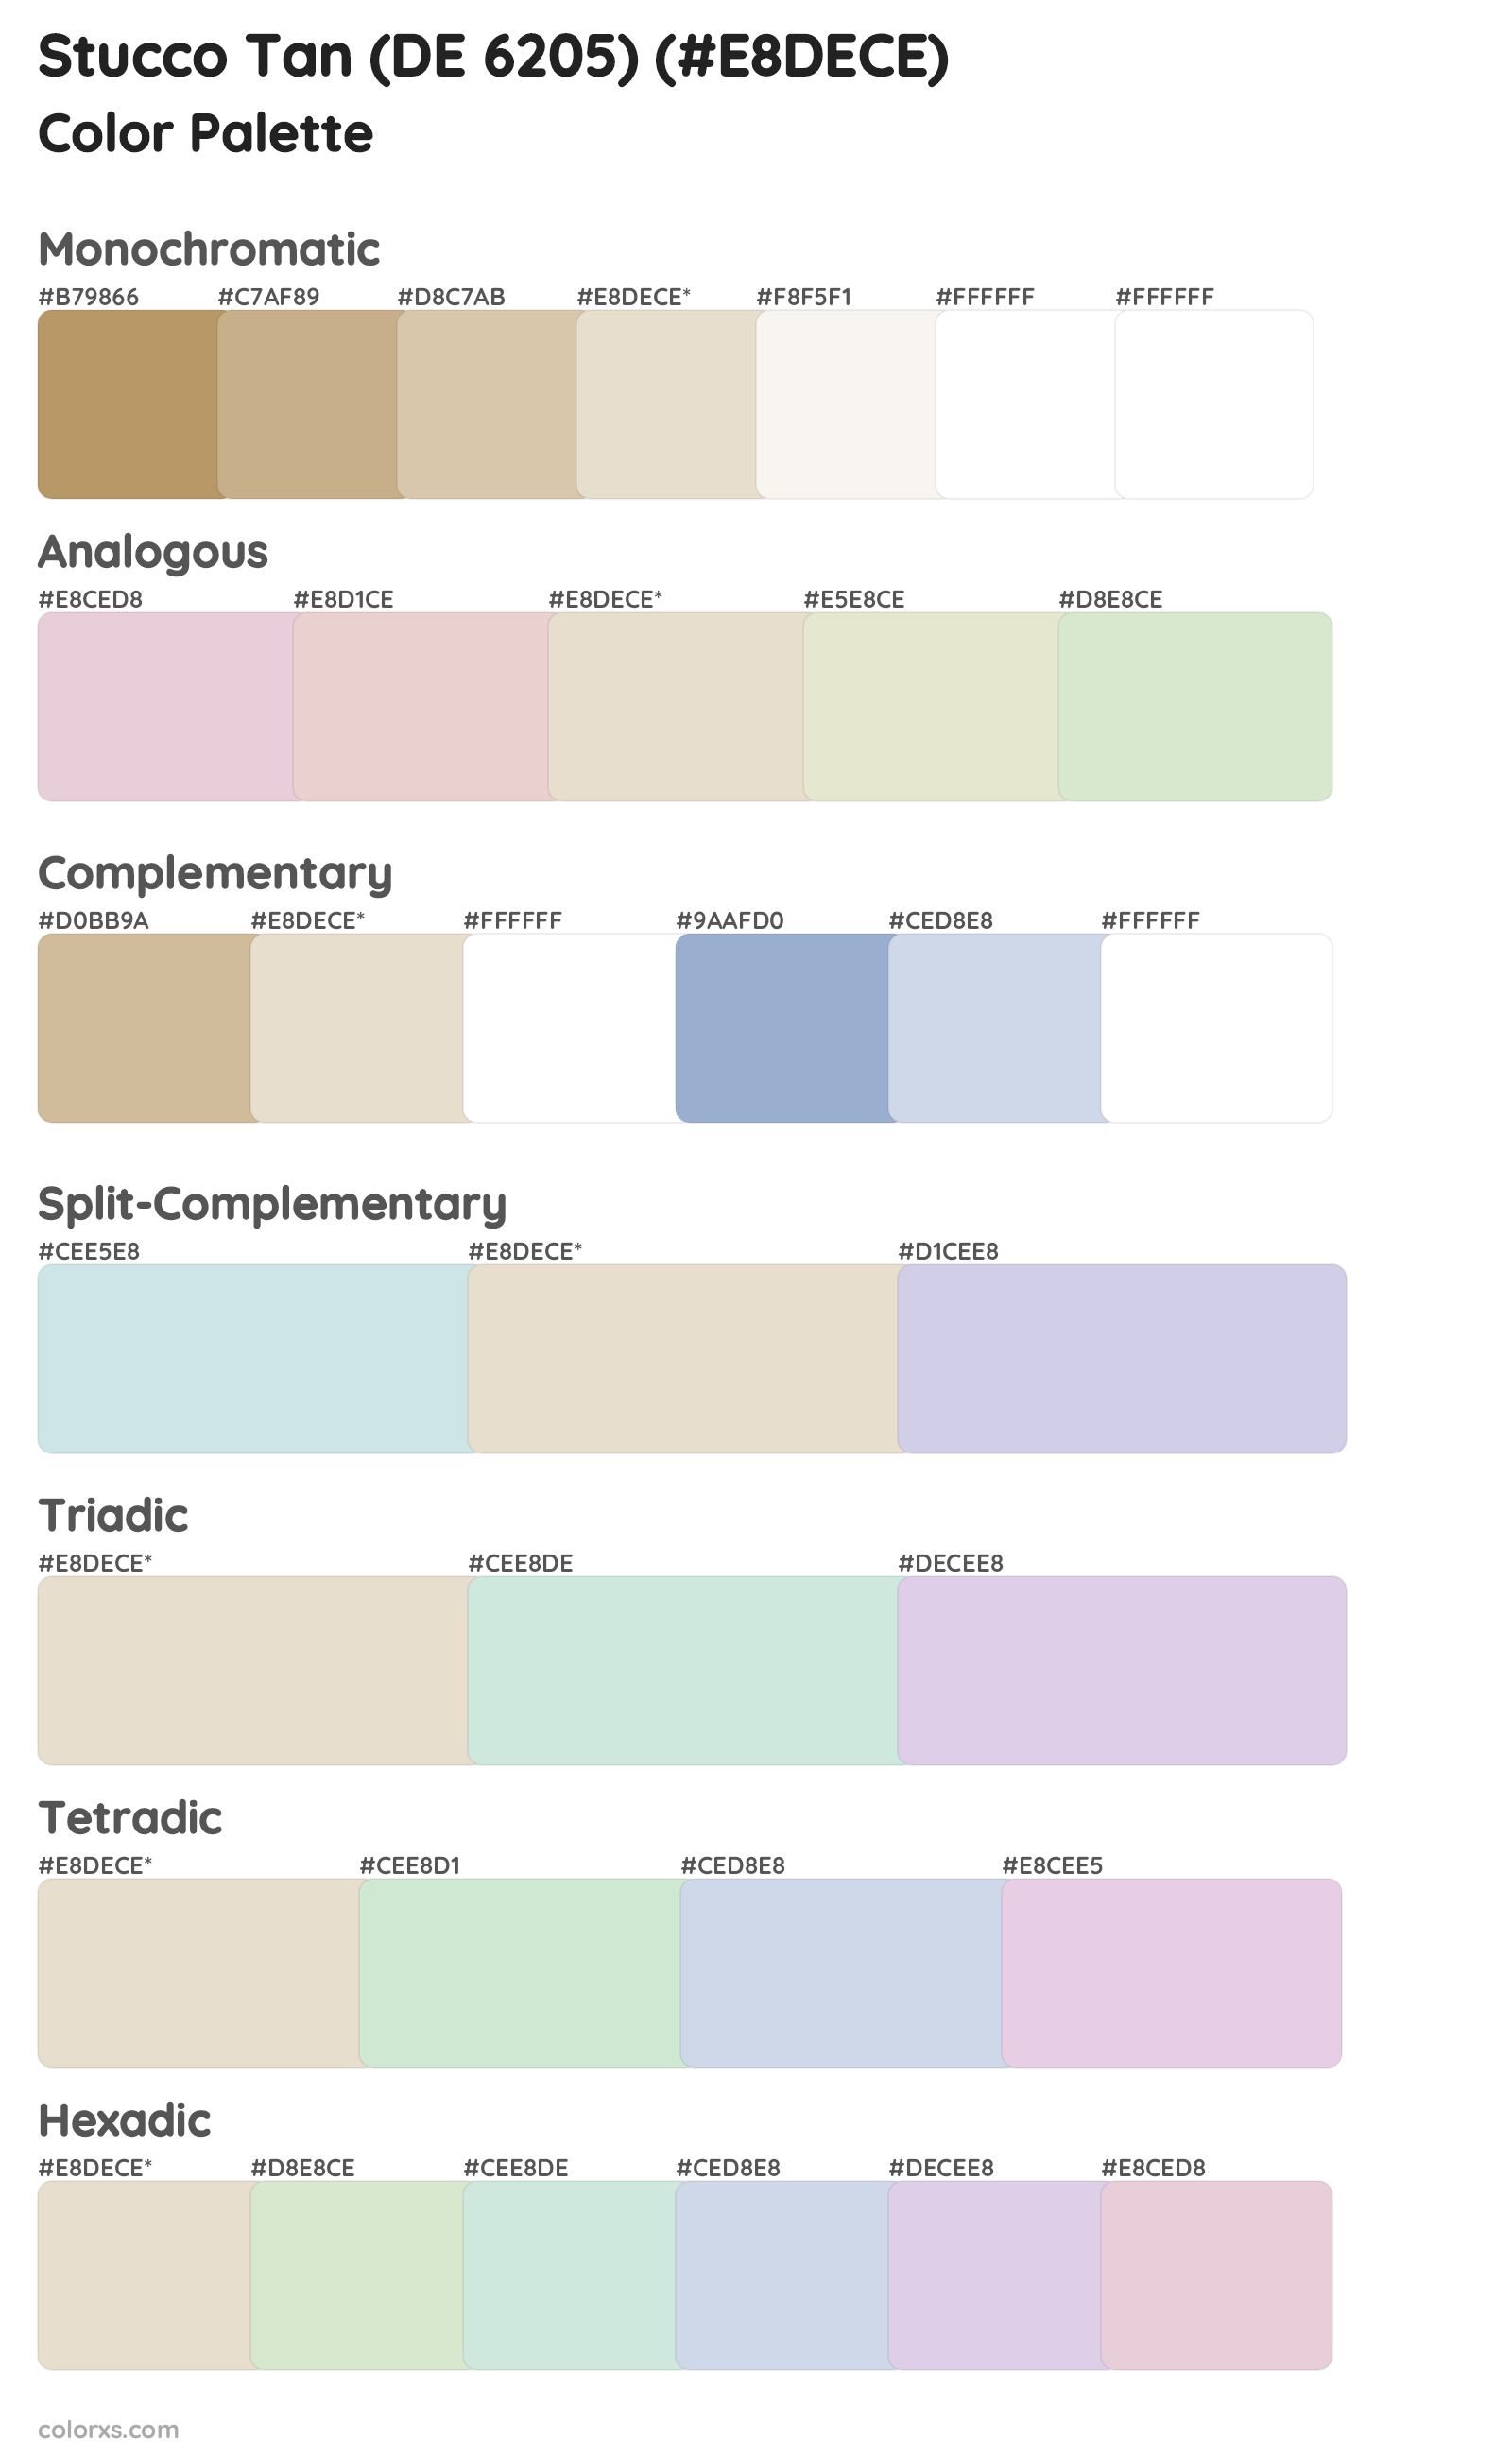 Stucco Tan (DE 6205) Color Scheme Palettes